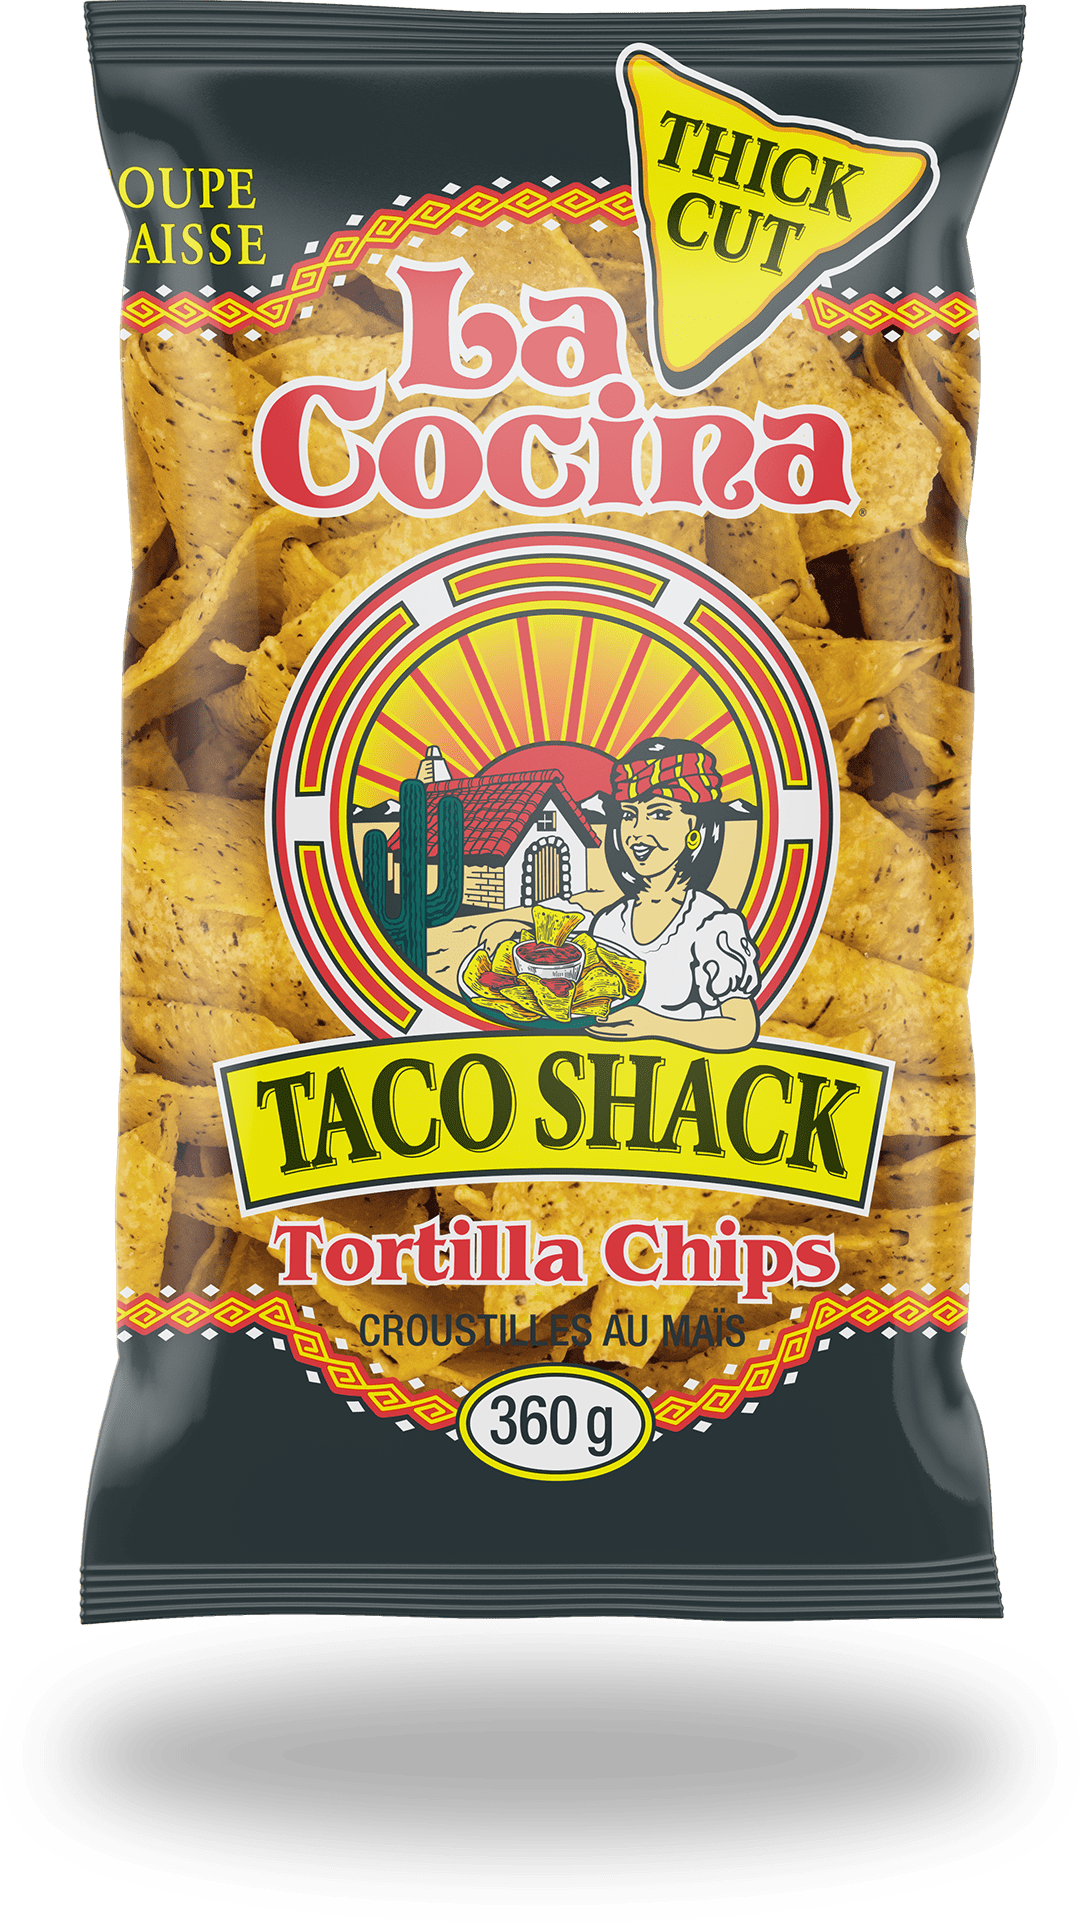 La Cocina Foods - Authentic Tortilla Chips & Corn Tortillas